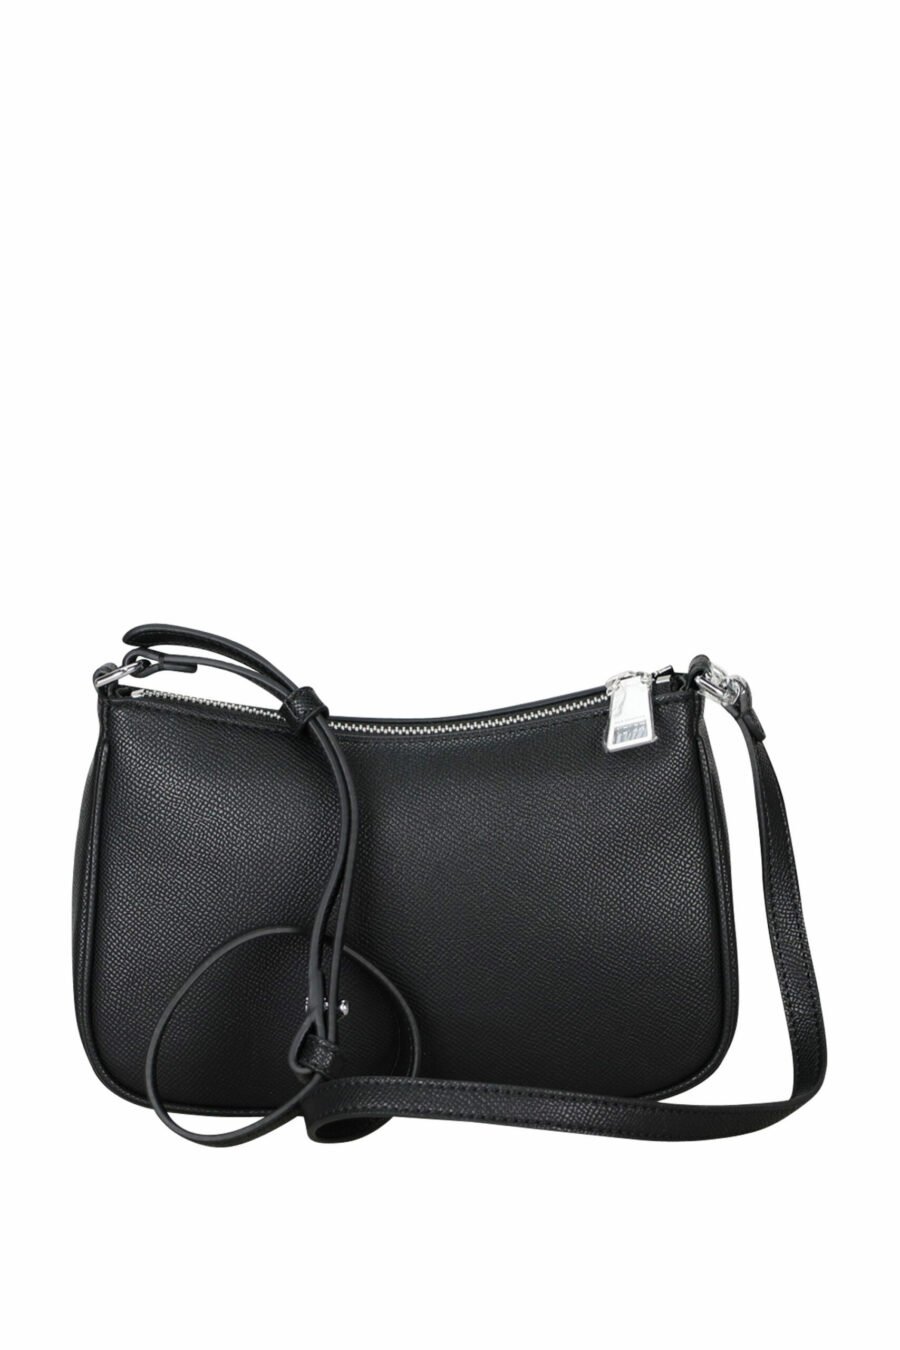 Black shoulder bag with mini-logo "rue st guillaume" - 8720744417132 2 scaled